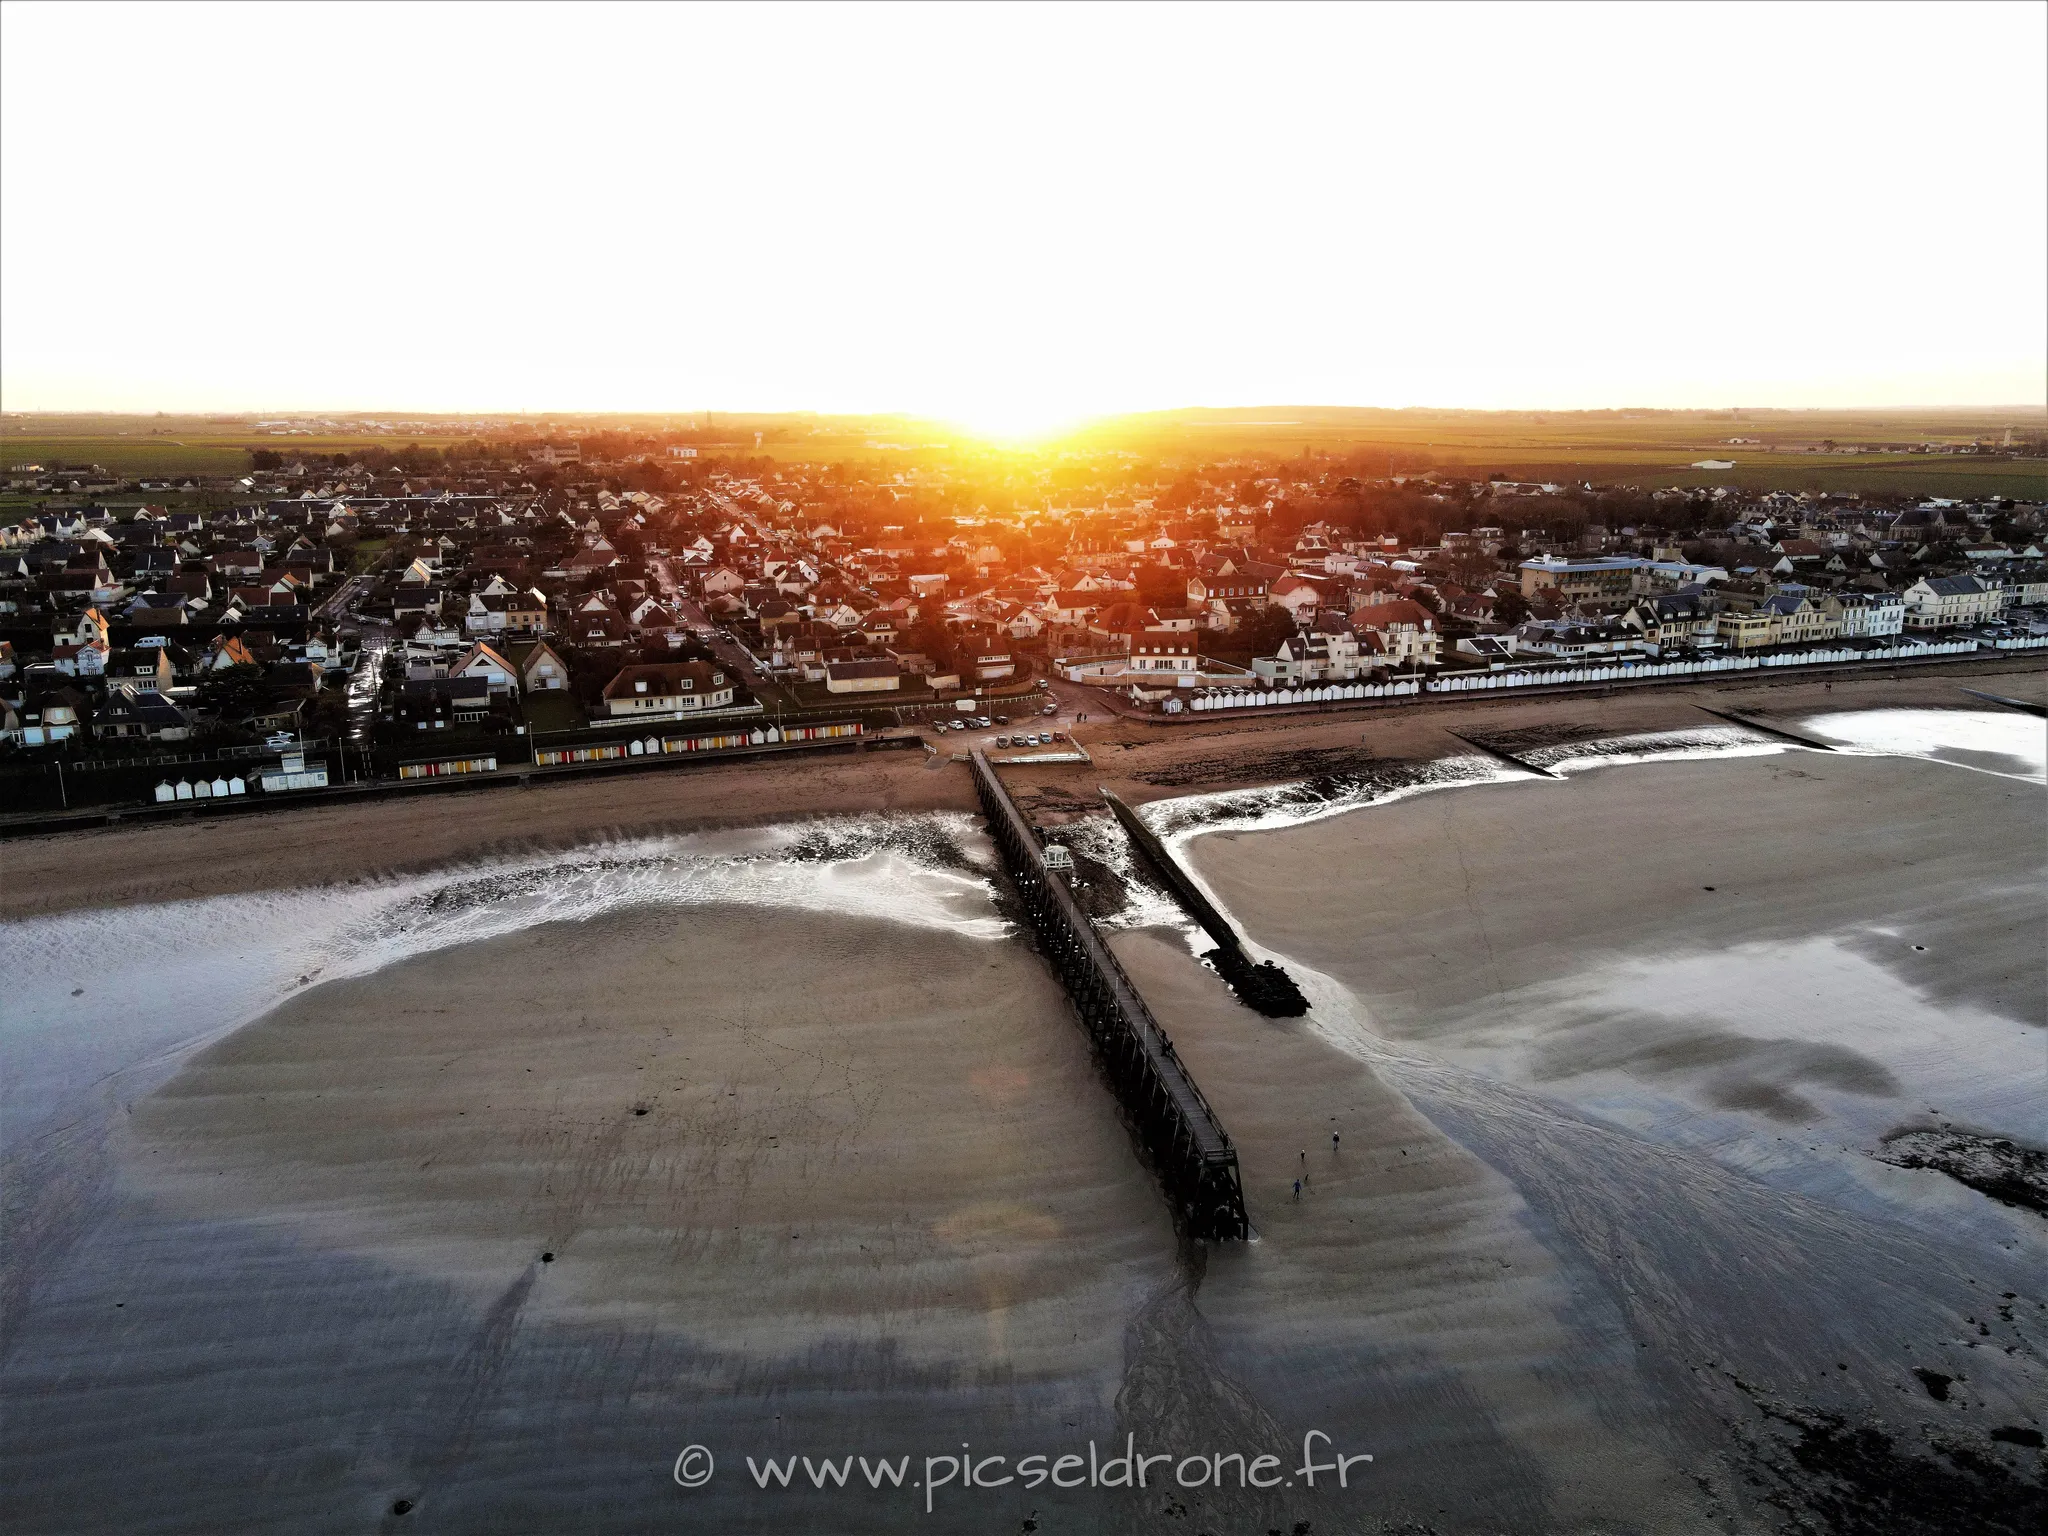 Prise de vue aérienne, photo aérienne d'un coucher de soleil, plage, télépilote drone, pilote drone, PICSEL DRONE, CAEN